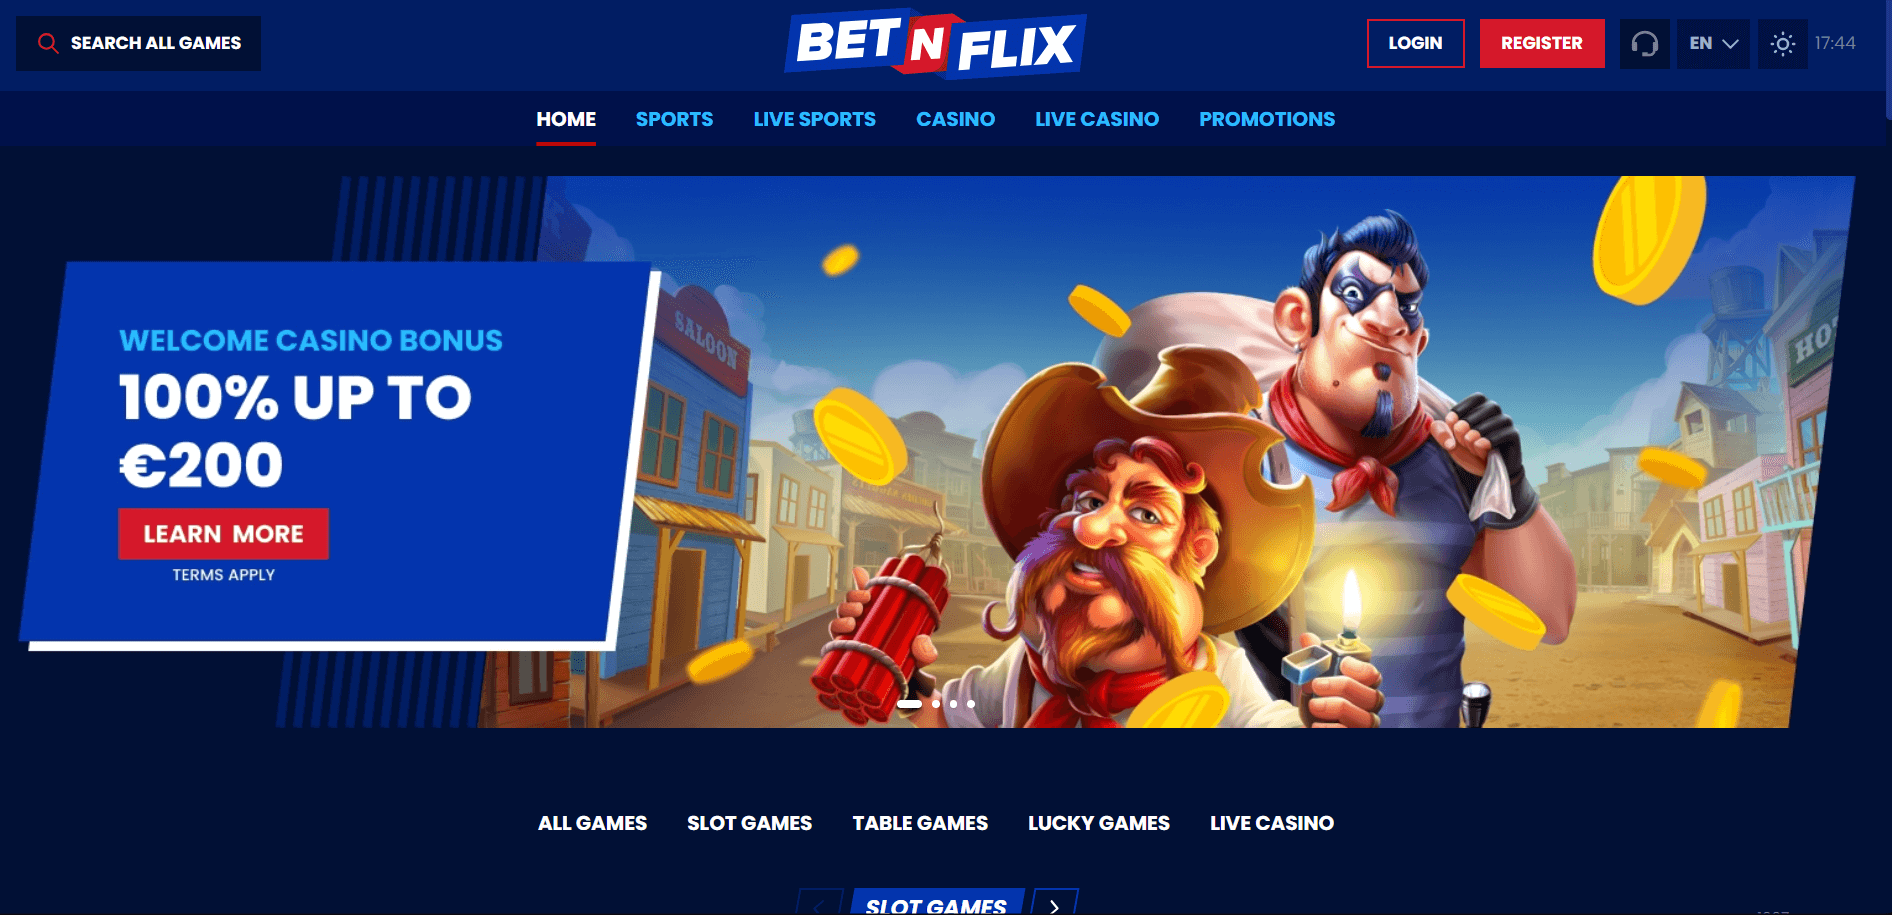 BetNFlix online casino homepage